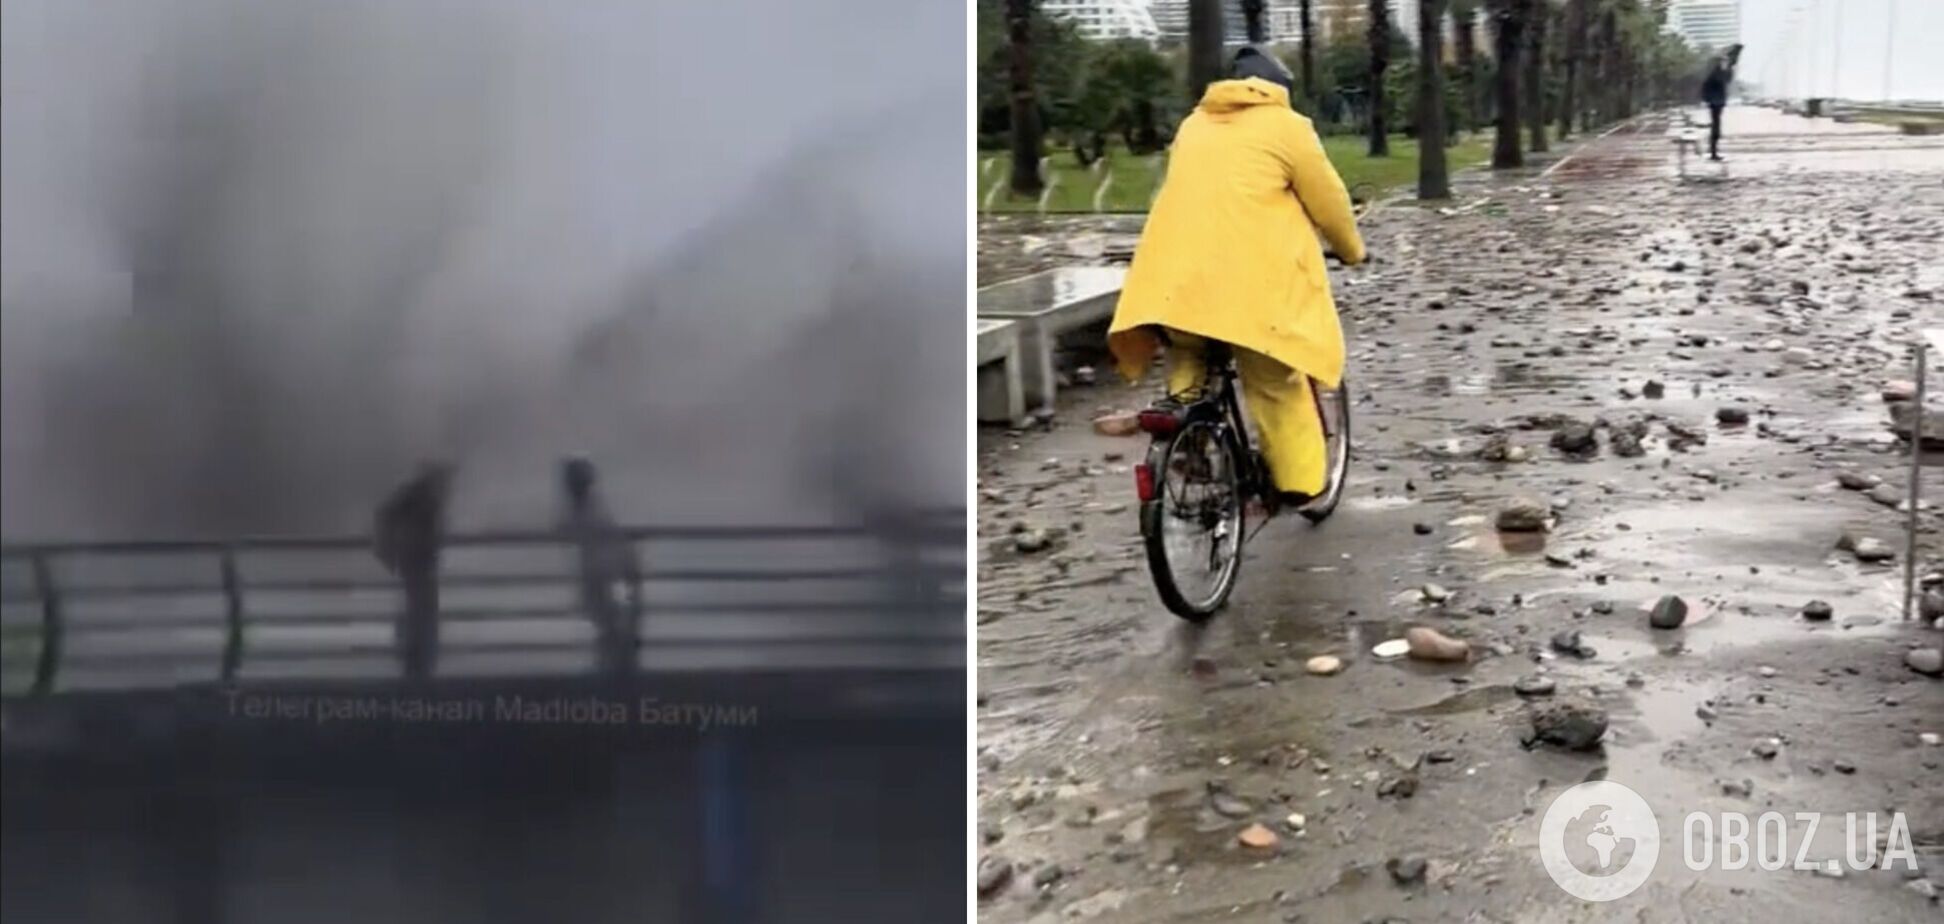 Сильний шторм на популярному курорті Грузії ледь не змив людей і затопив вулиці. Фото і відео